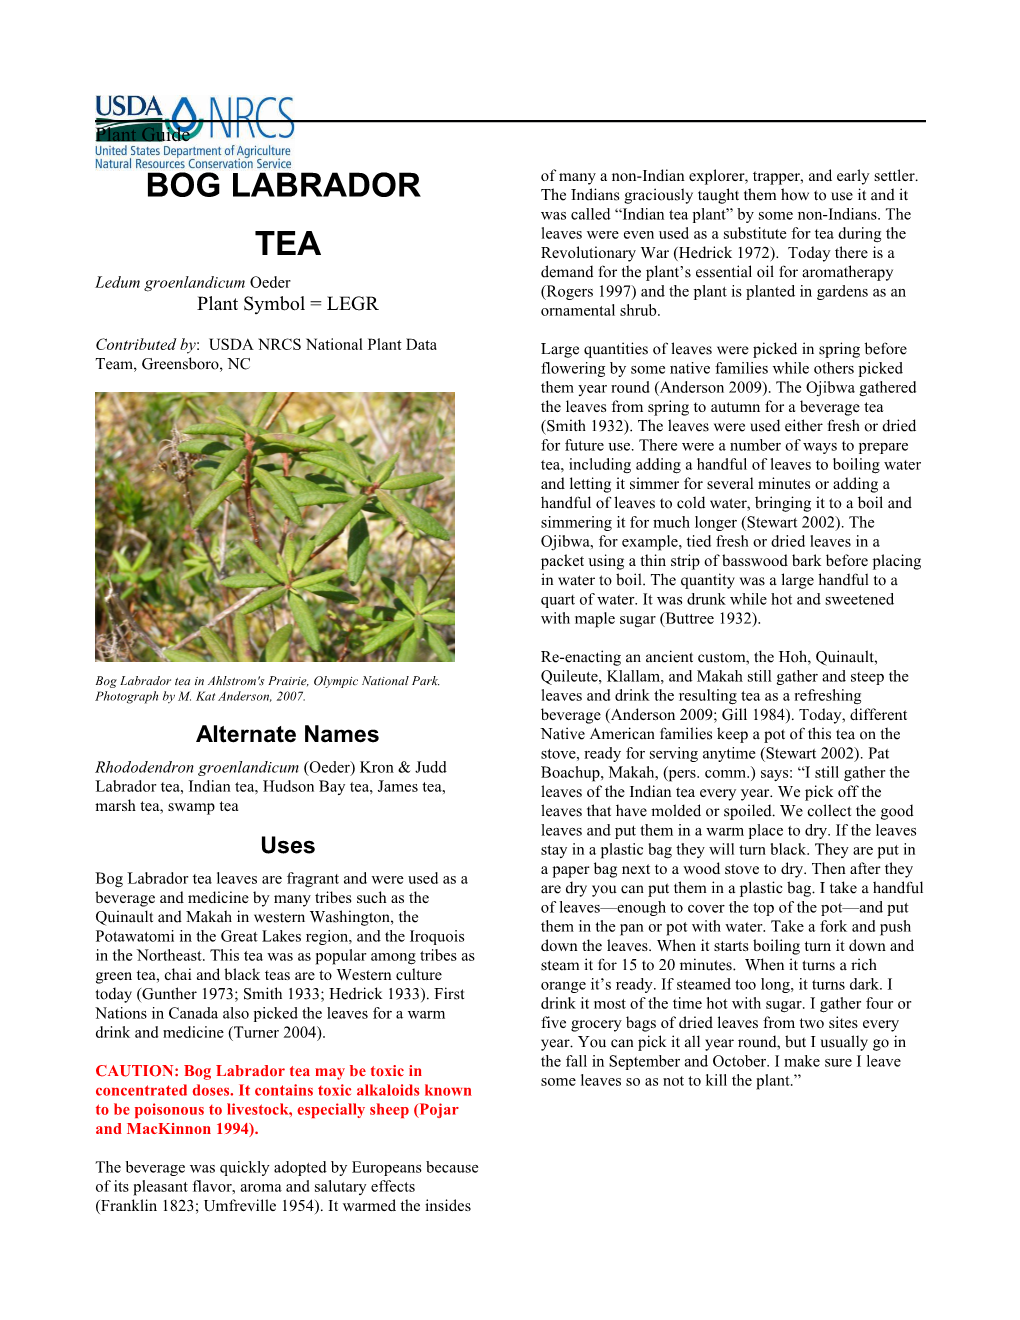 Bog Labrador Tea (Ledum Groenlandicum) Plant Guide